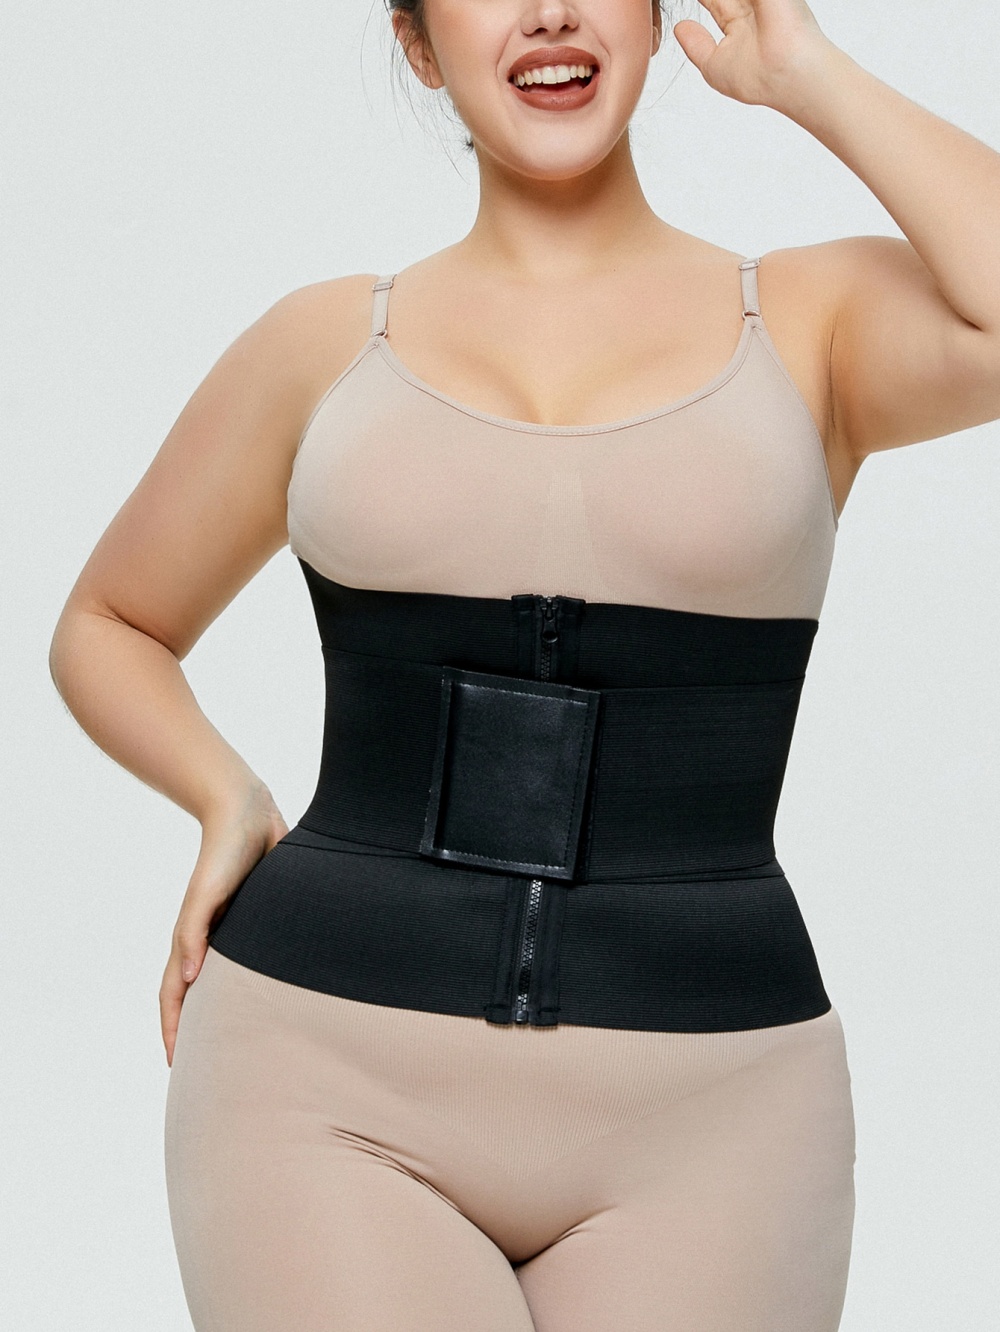 Plastic waist belt body sculpting corset for women